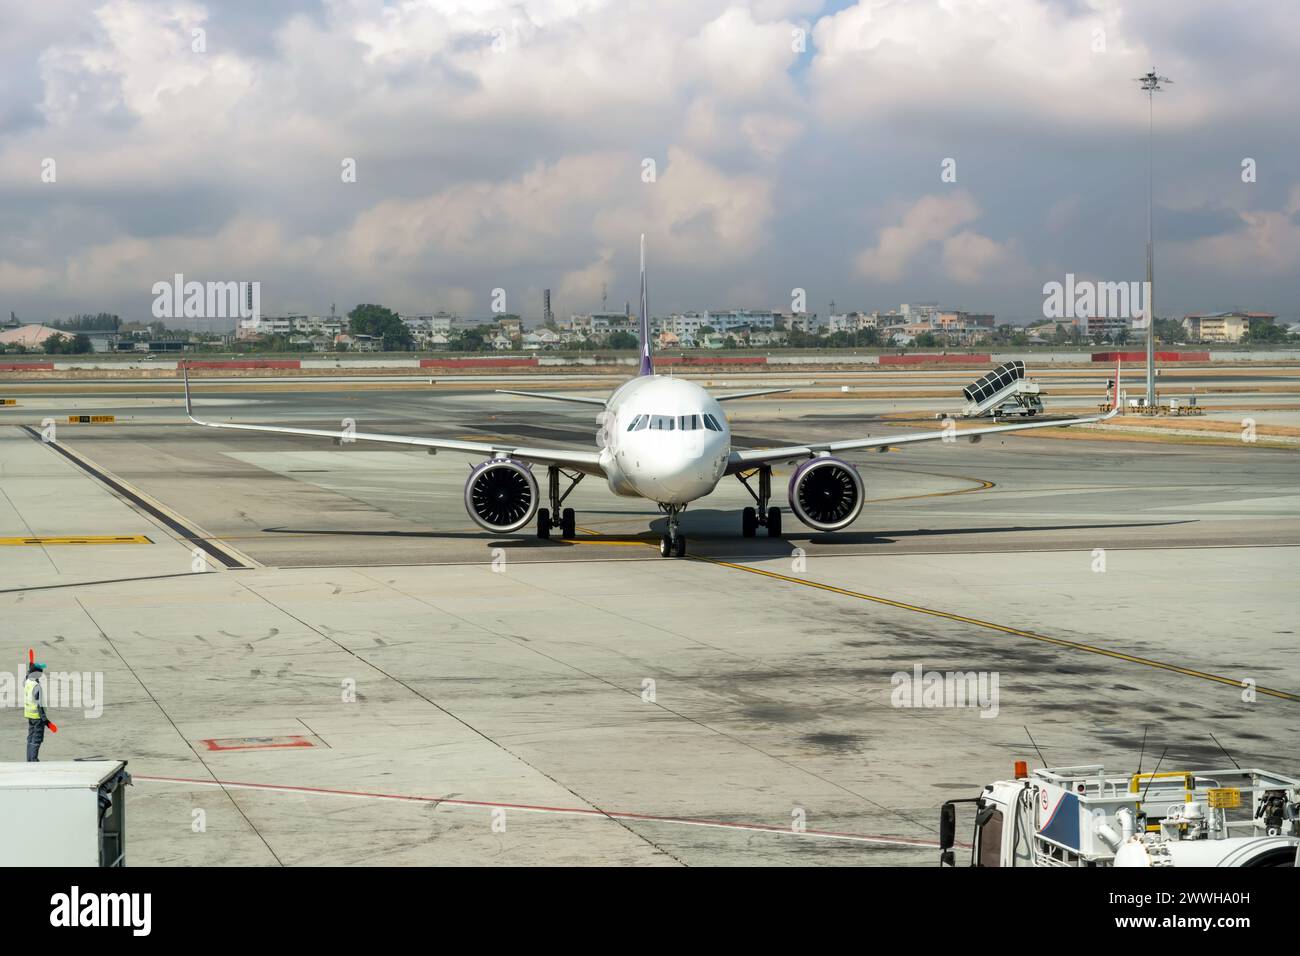 L'aereo passeggeri arriva dopo l'atterraggio al terminal dell'aeroporto Foto Stock